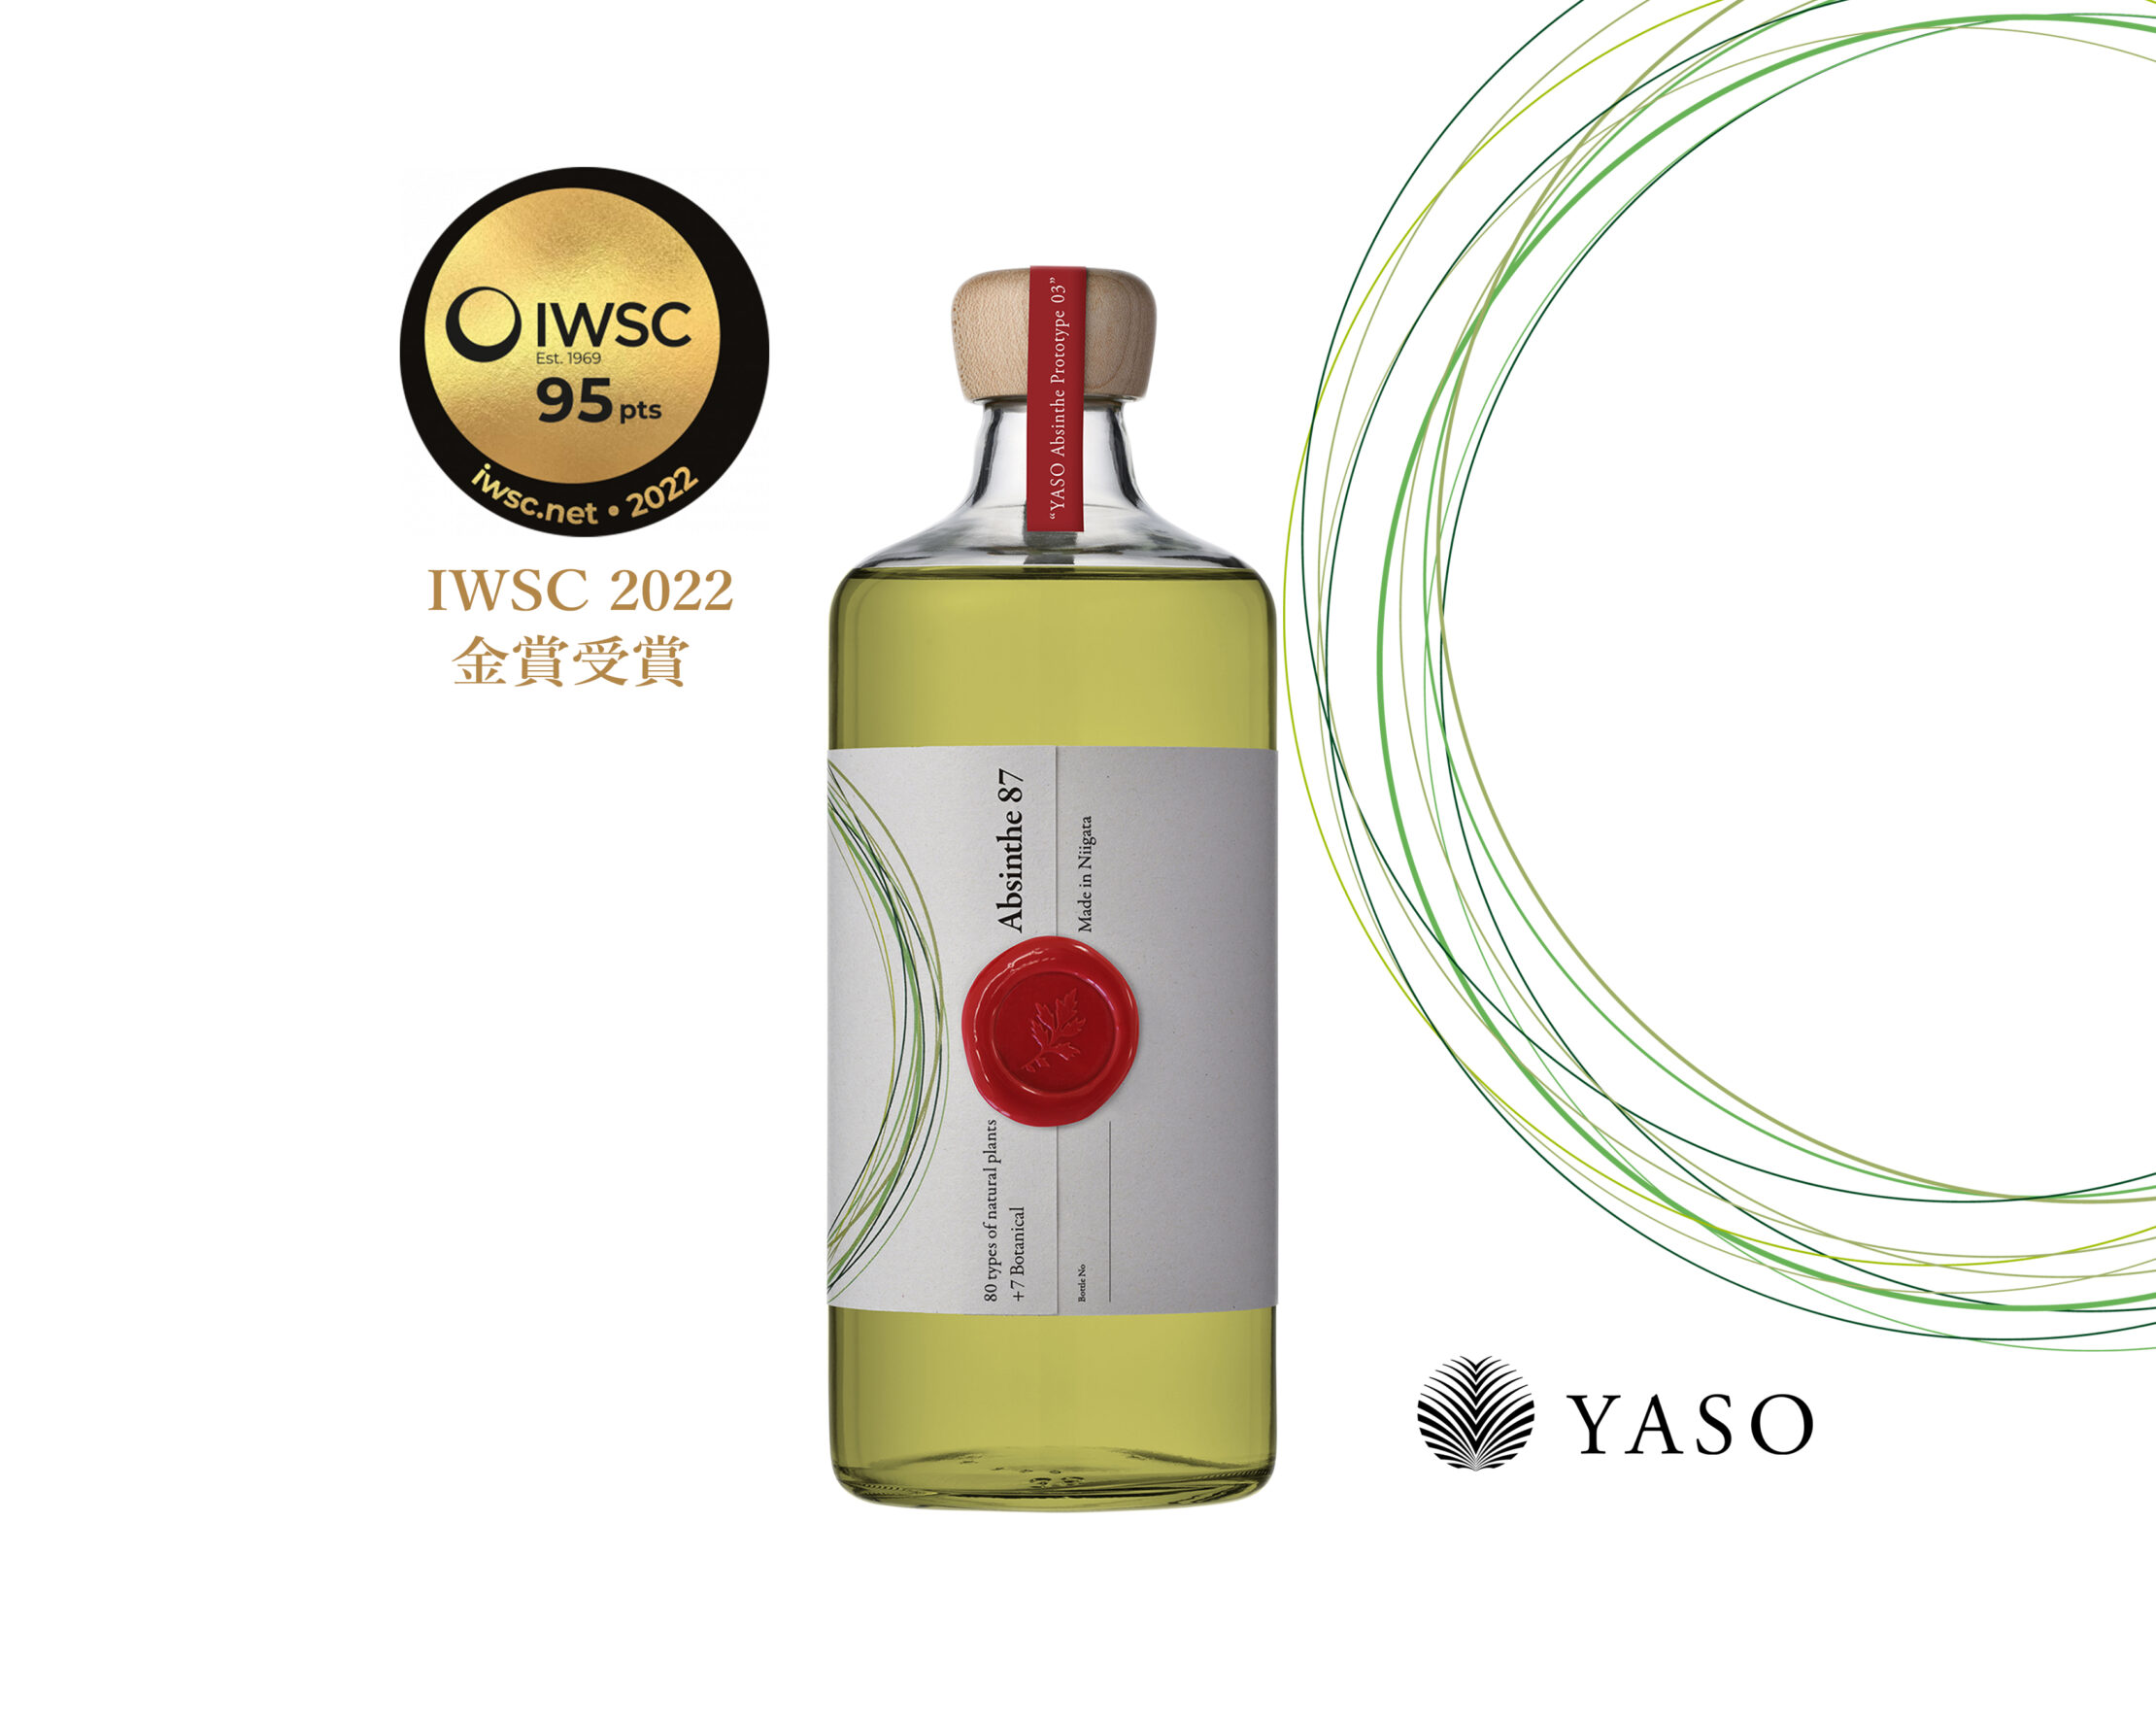 【国内初】新潟・越後薬草クラフトジンブランド「YASO」、世界で最も権威と歴史のある酒類品評会『IWSC 2022』でアブサンが金賞受賞！